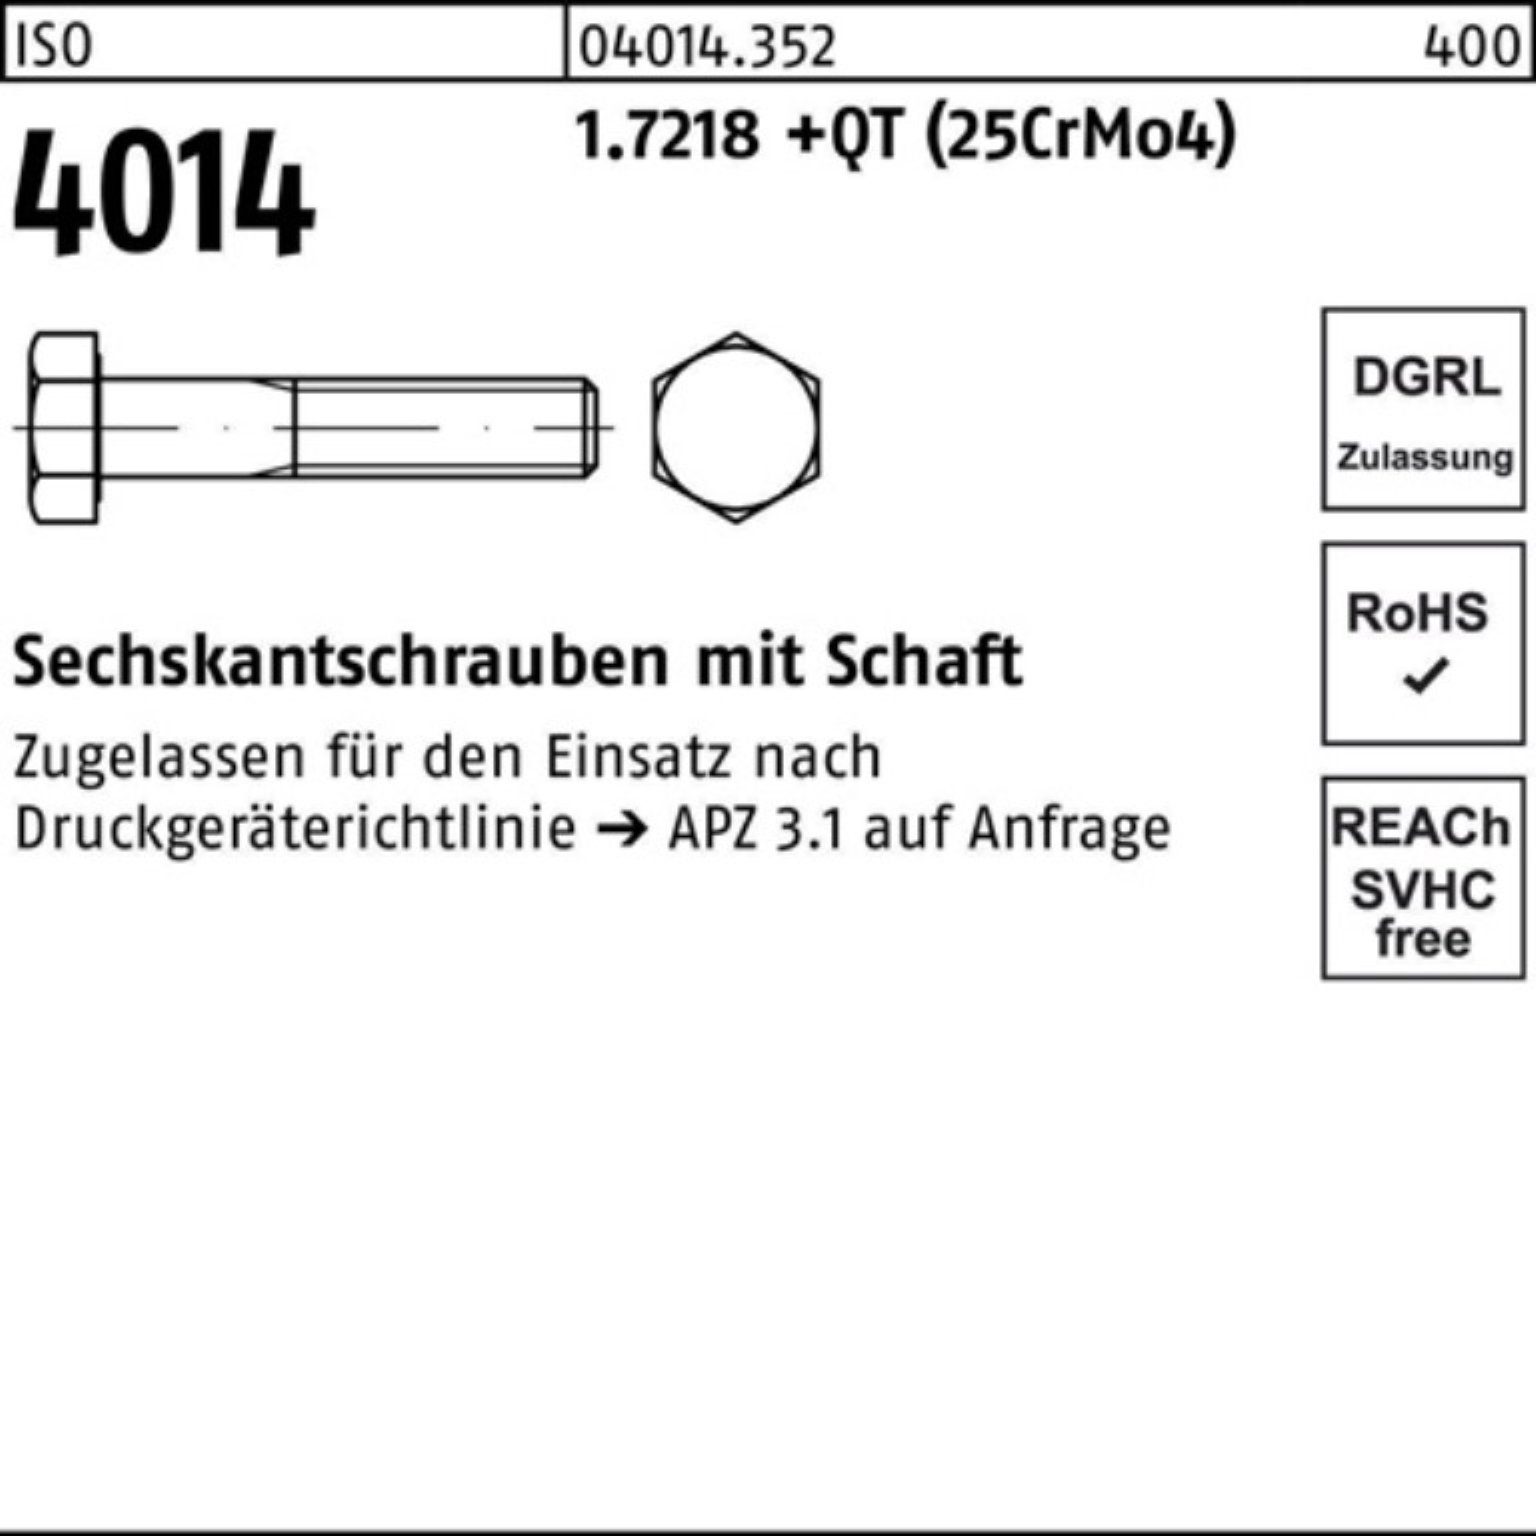 Bufab Sechskantschraube Sechskantschraube Pack M39x Schaft 160 ISO +QT 1.7218 4014 100er (25Cr